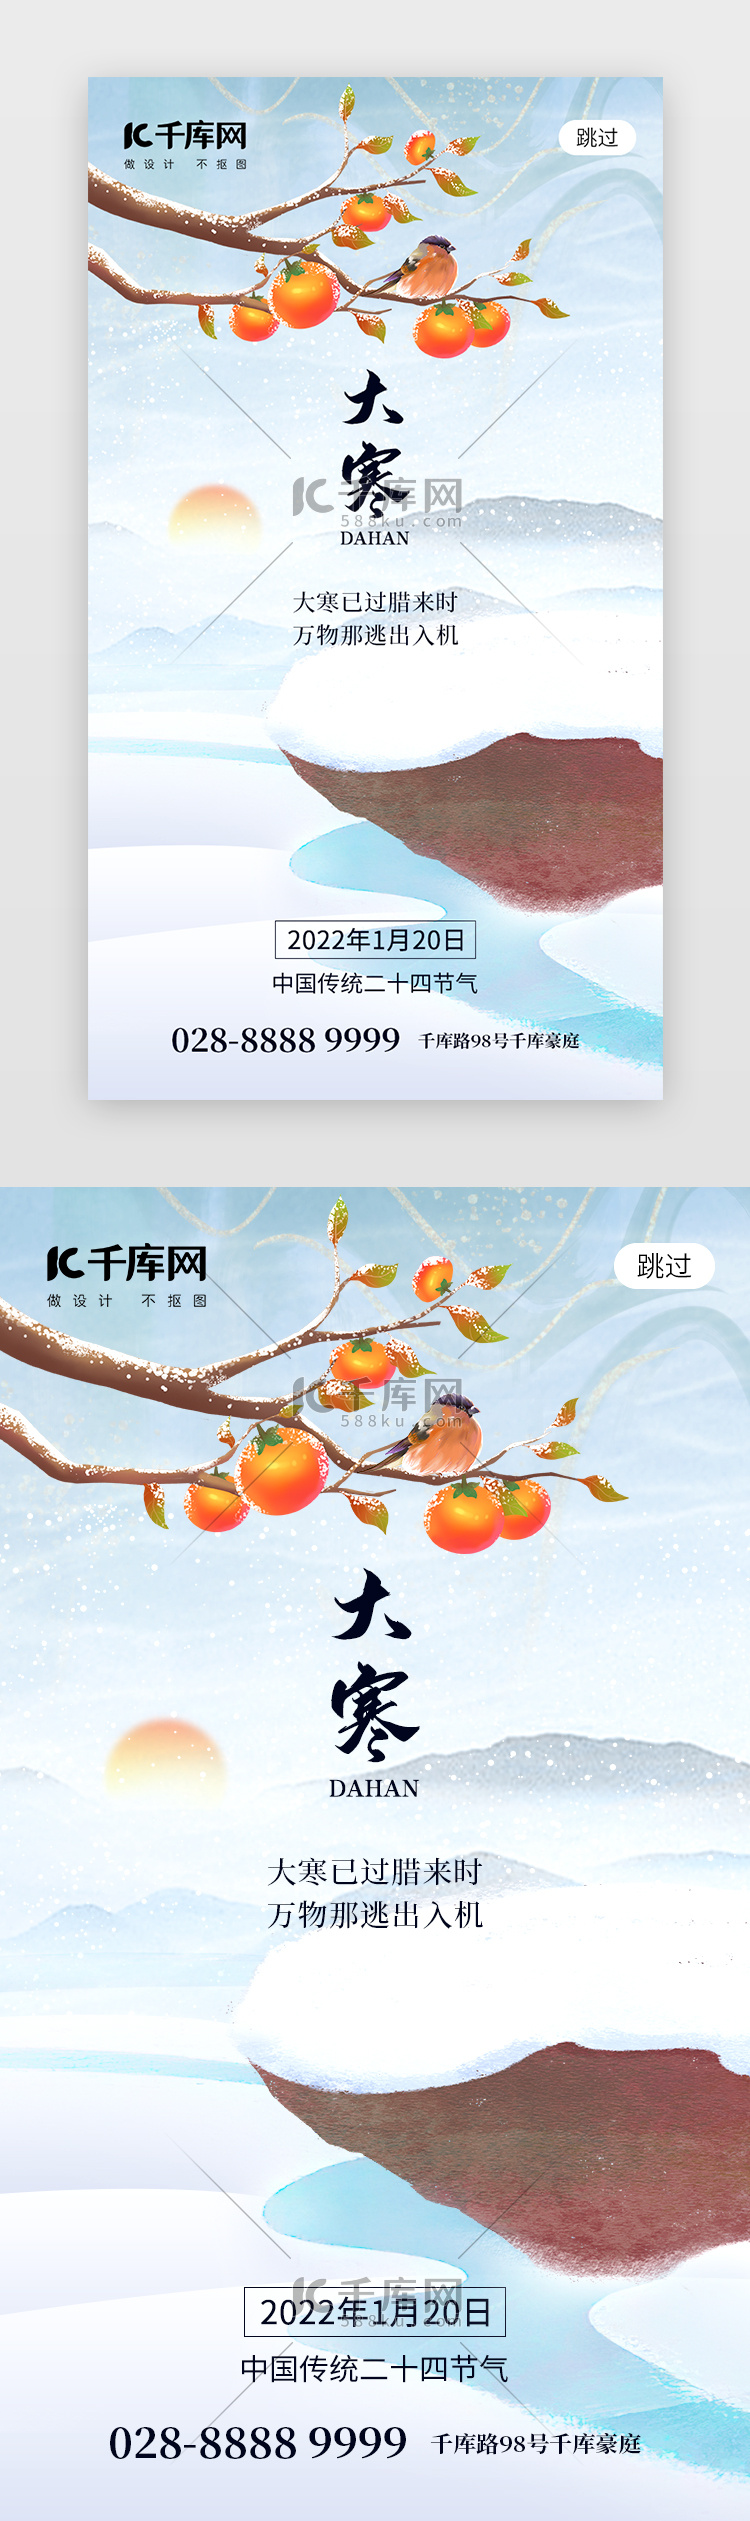 二十四节气大寒app闪屏创意浅蓝色柿子树